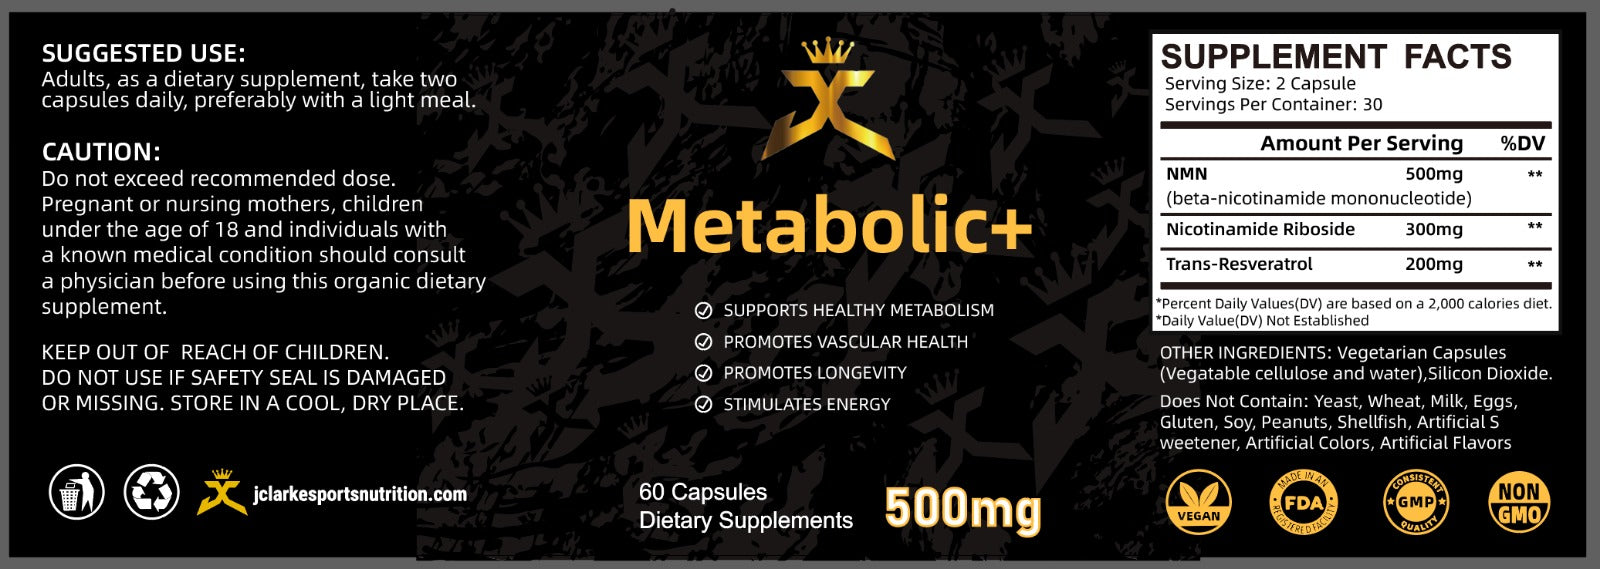 Metabolic+